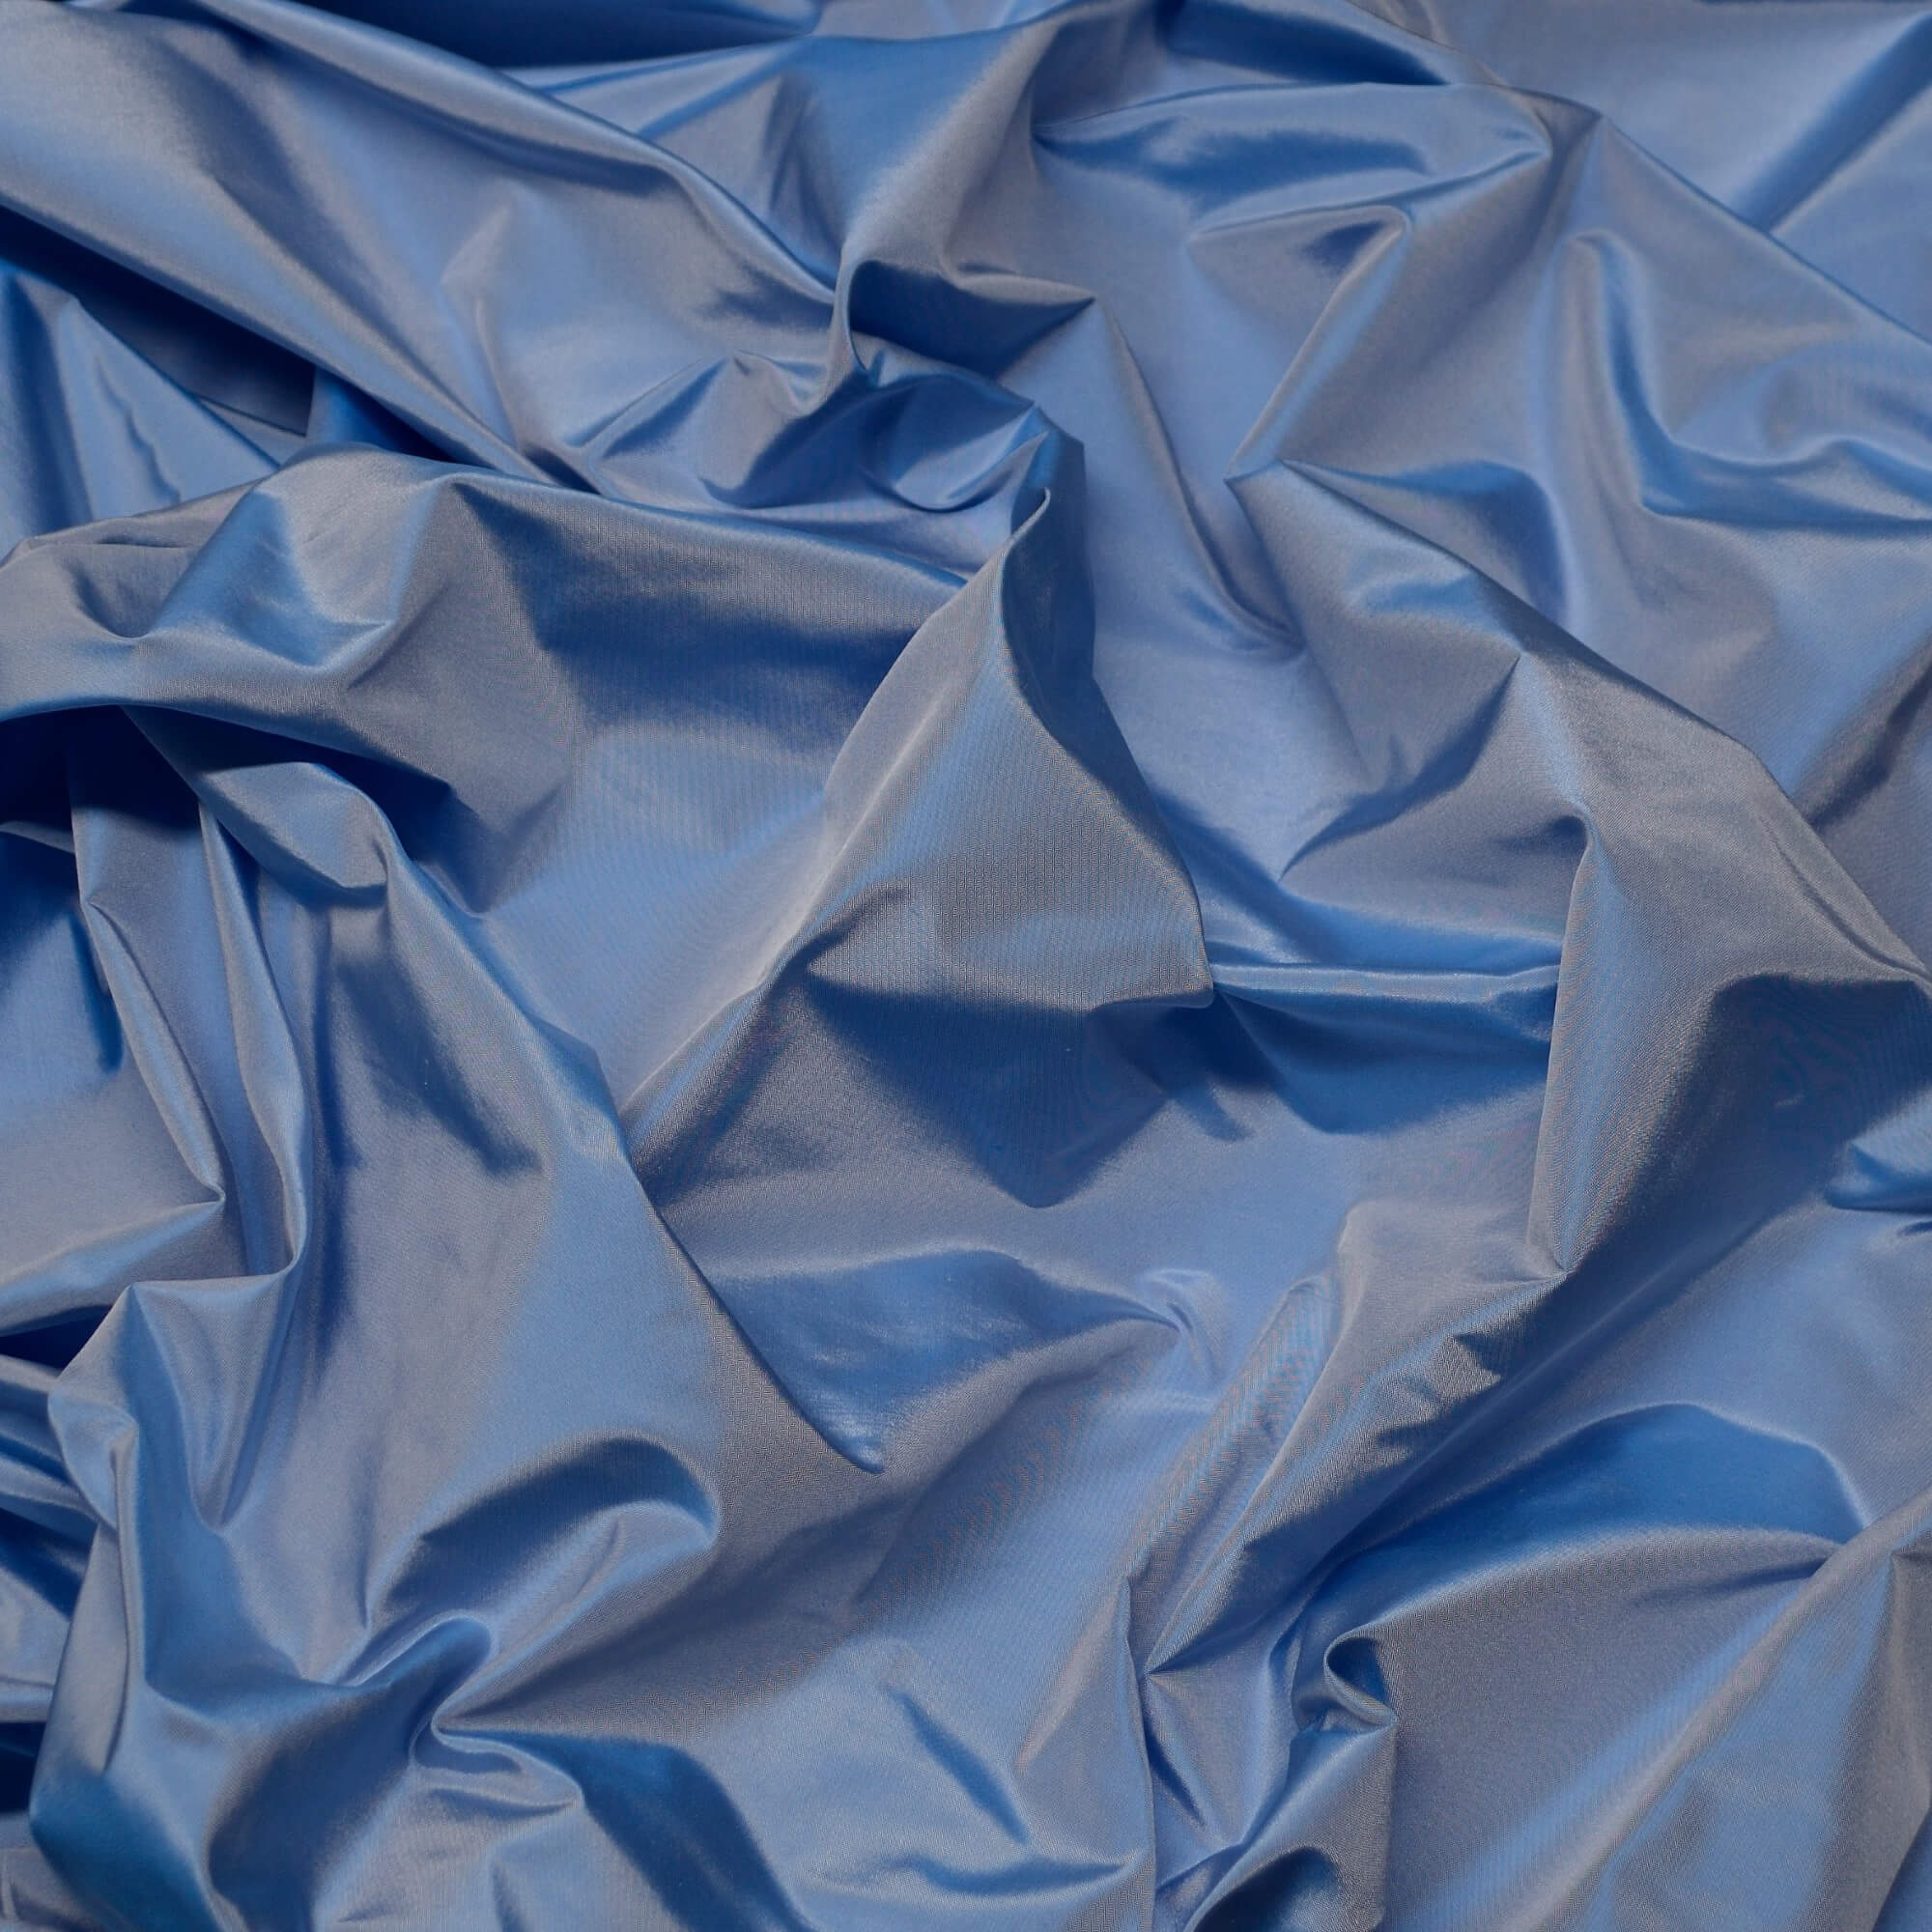 TS-7031: Cornflower Blue Silk Taffeta Fabric 100% Silk - Silks Unlimited